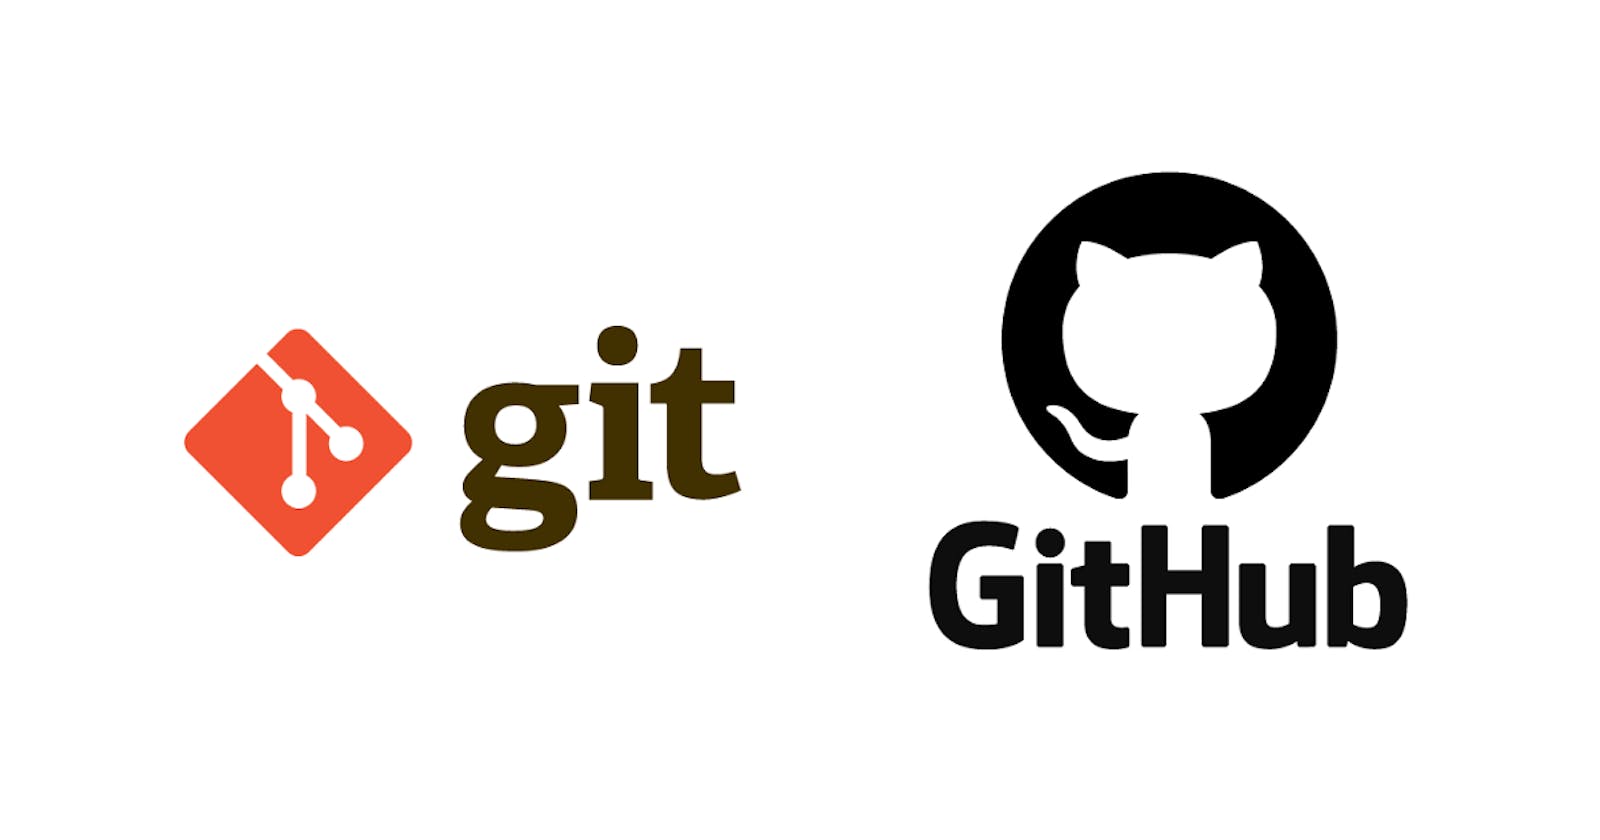 Playing with git and GitHub